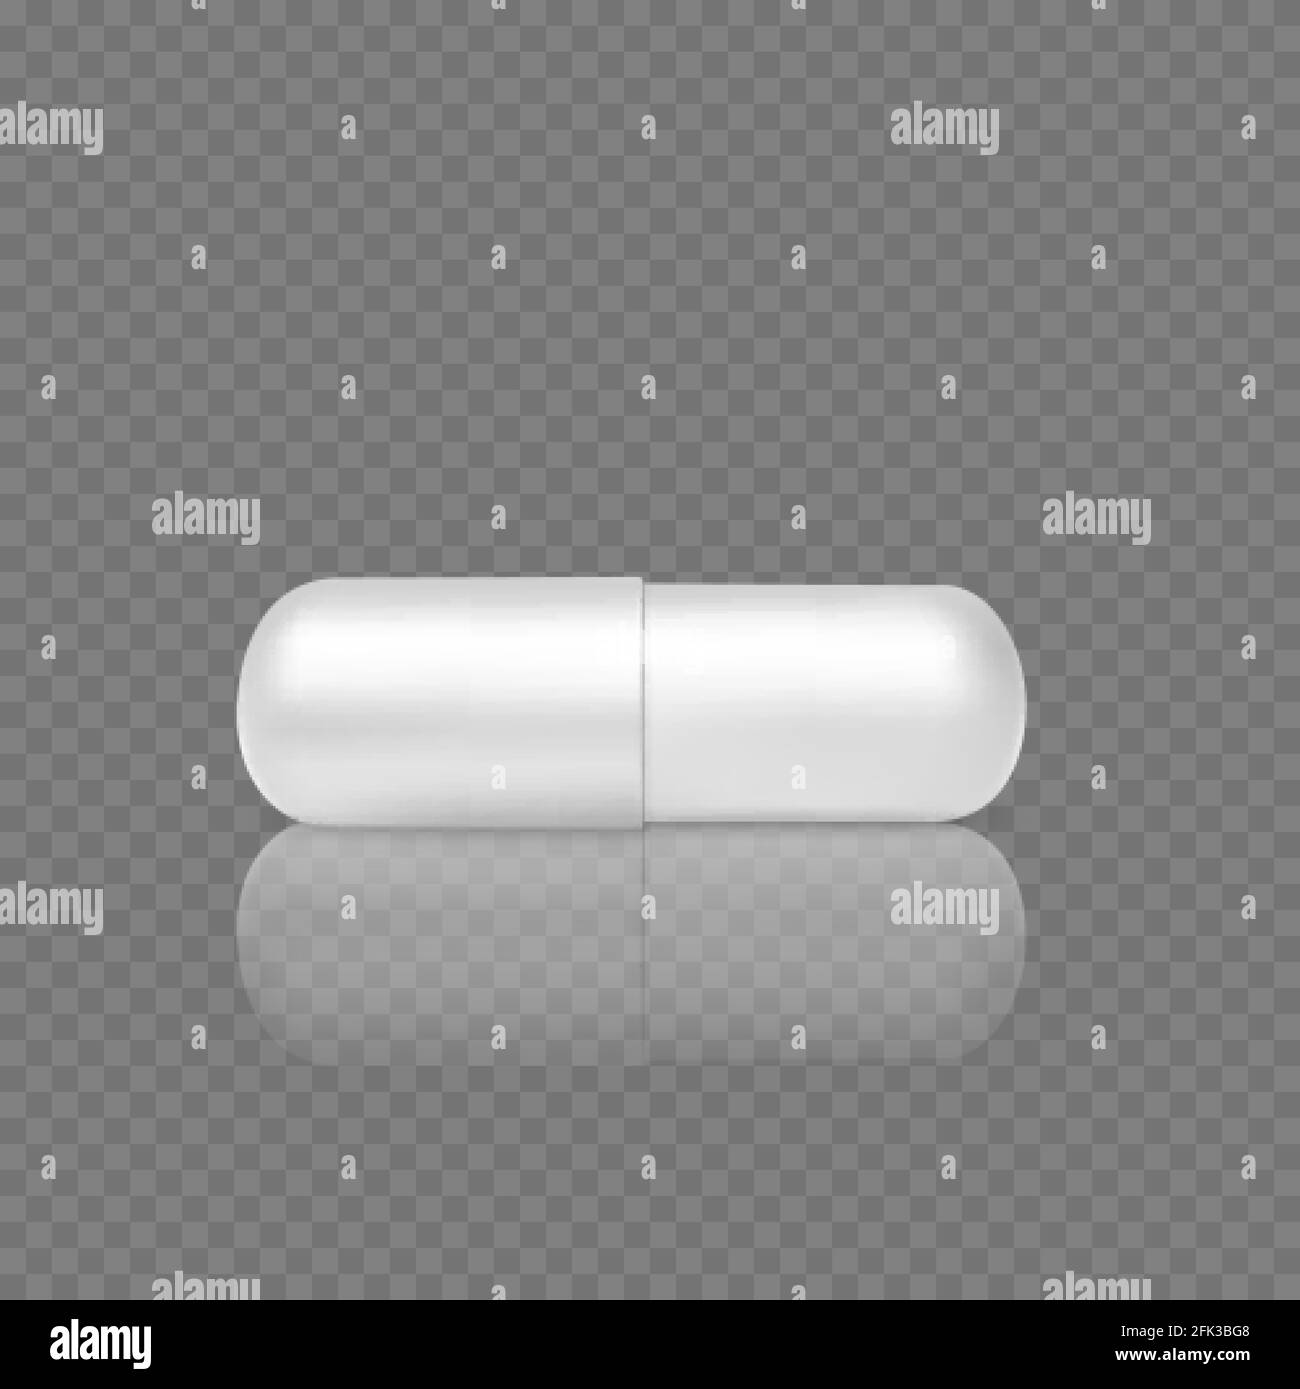 White Realistic Pill. rendu 3d de la capsule en comprimé. Objet de soins de santé et de médecine. Vecteur Illustration de Vecteur